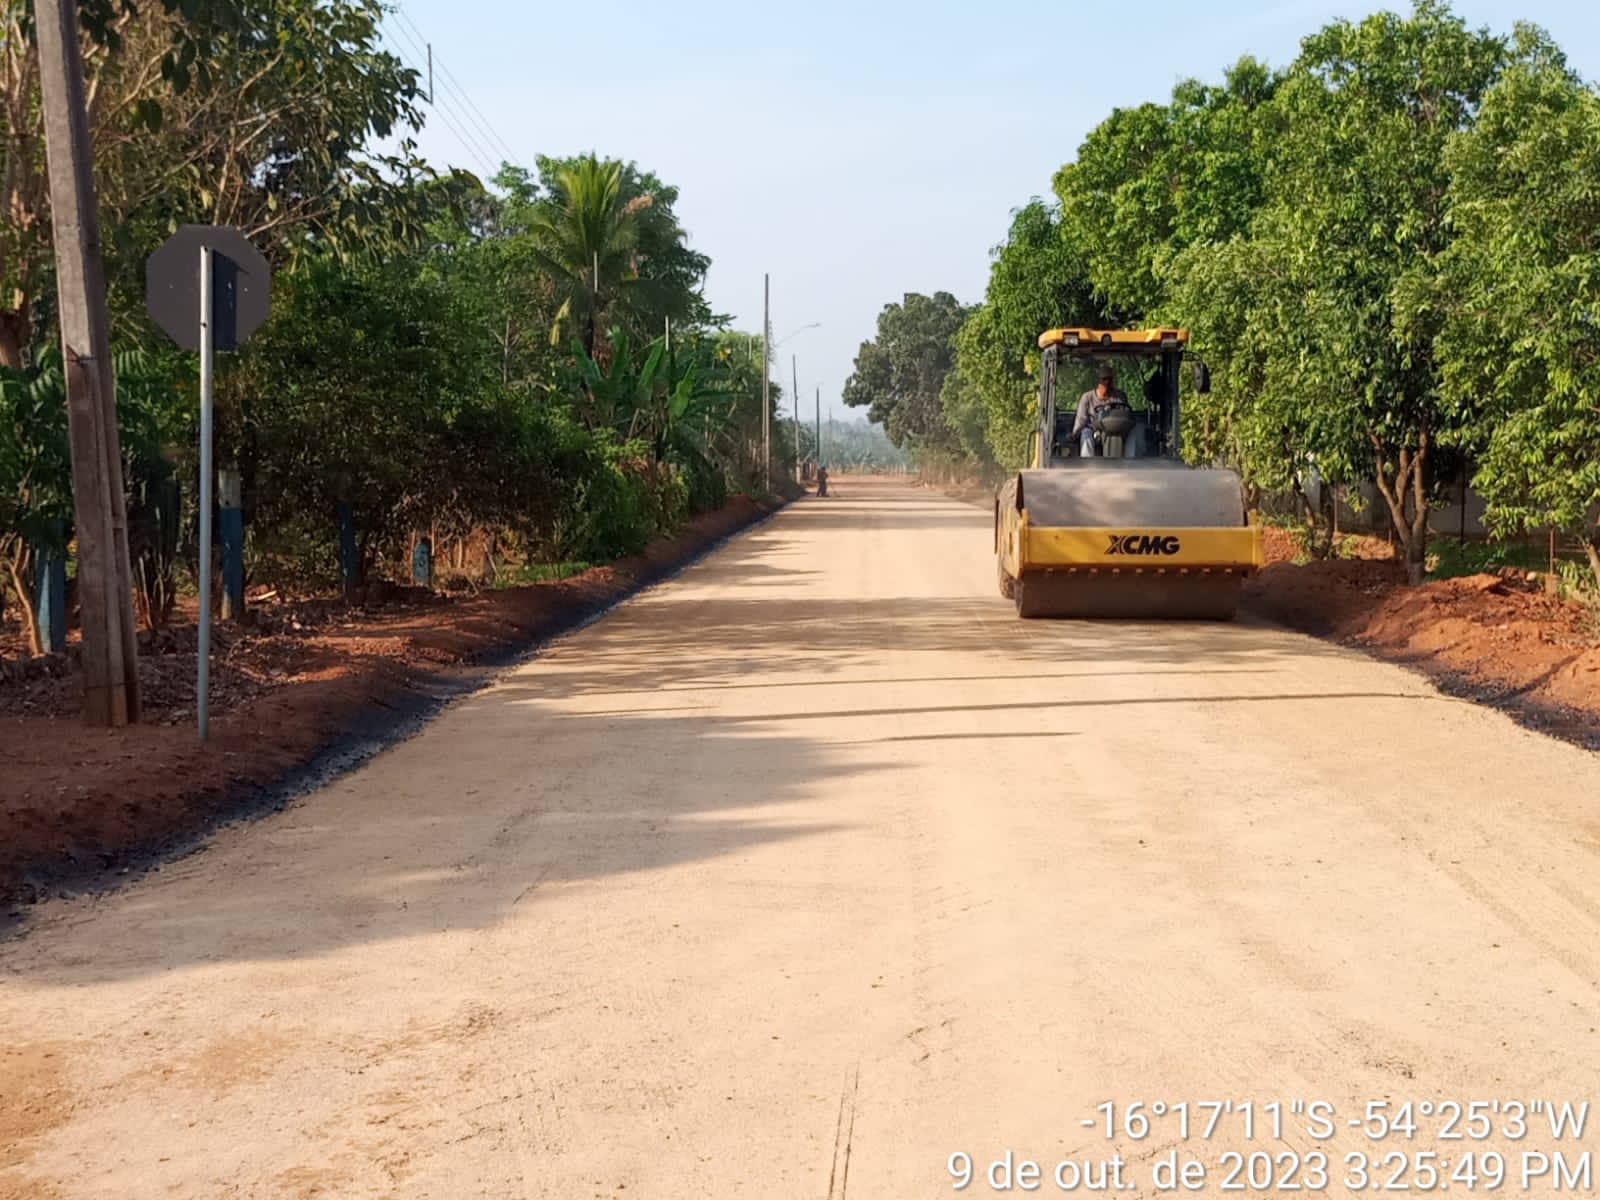 Obras de pavimentação estão em fase de conclusão no distrito do Naboreiro